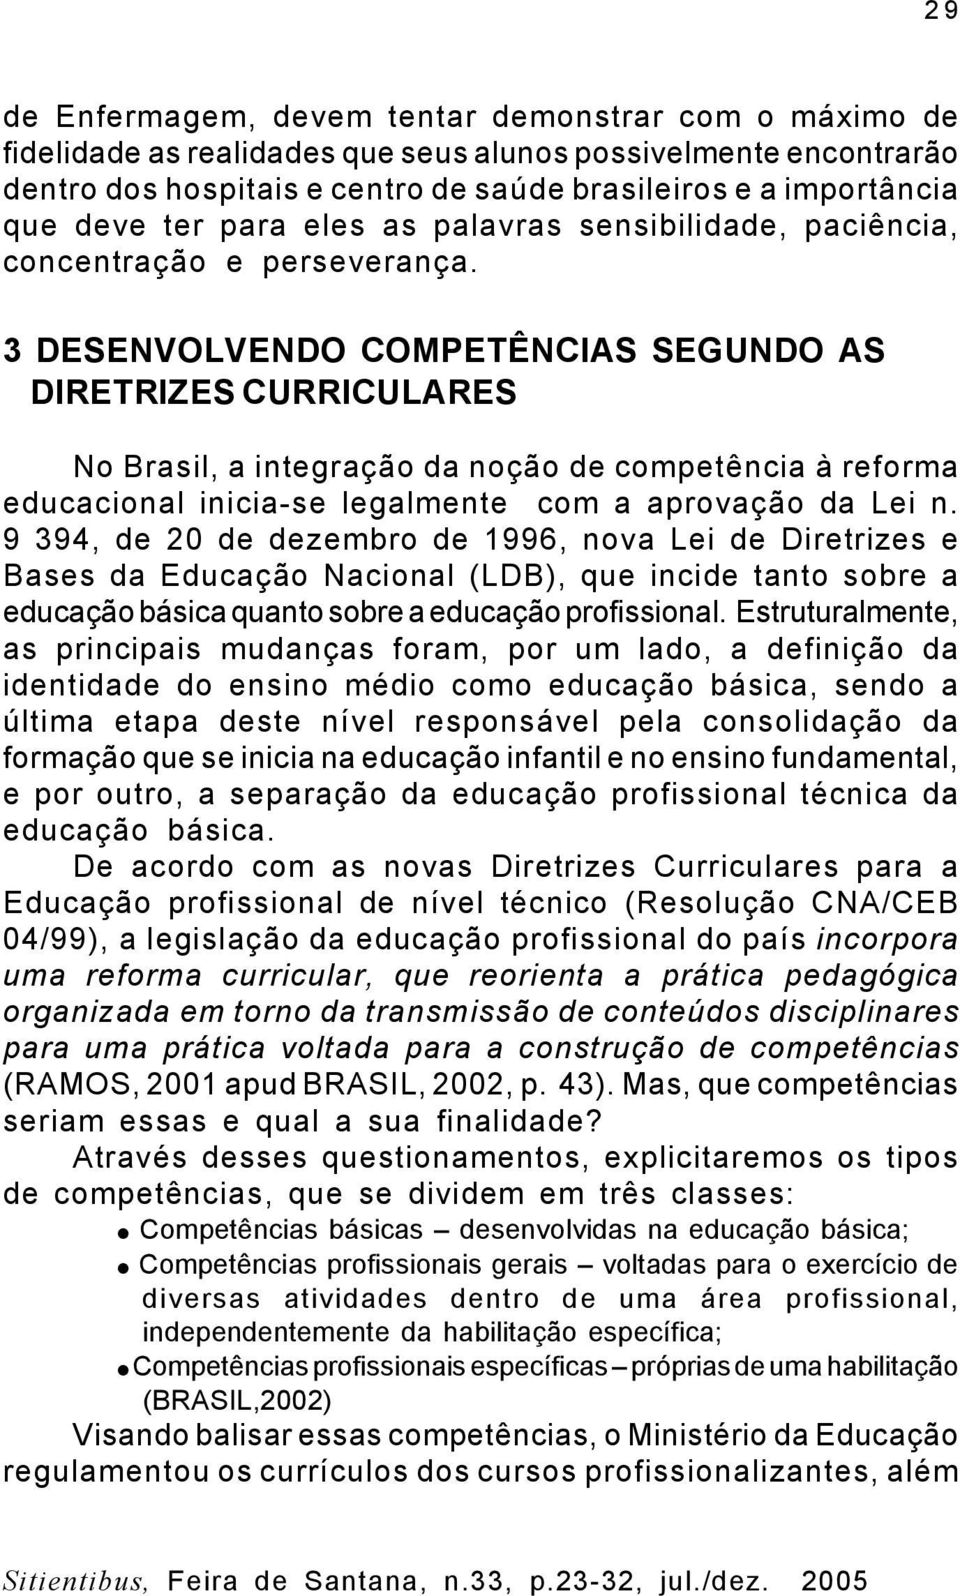 3 DESENVOLVENDO COMPETÊNCIAS SEGUNDO AS DIRETRIZES CURRICULARES No Brasil, a integração da noção de competência à reforma educacional inicia-se legalmente com a aprovação da Lei n.